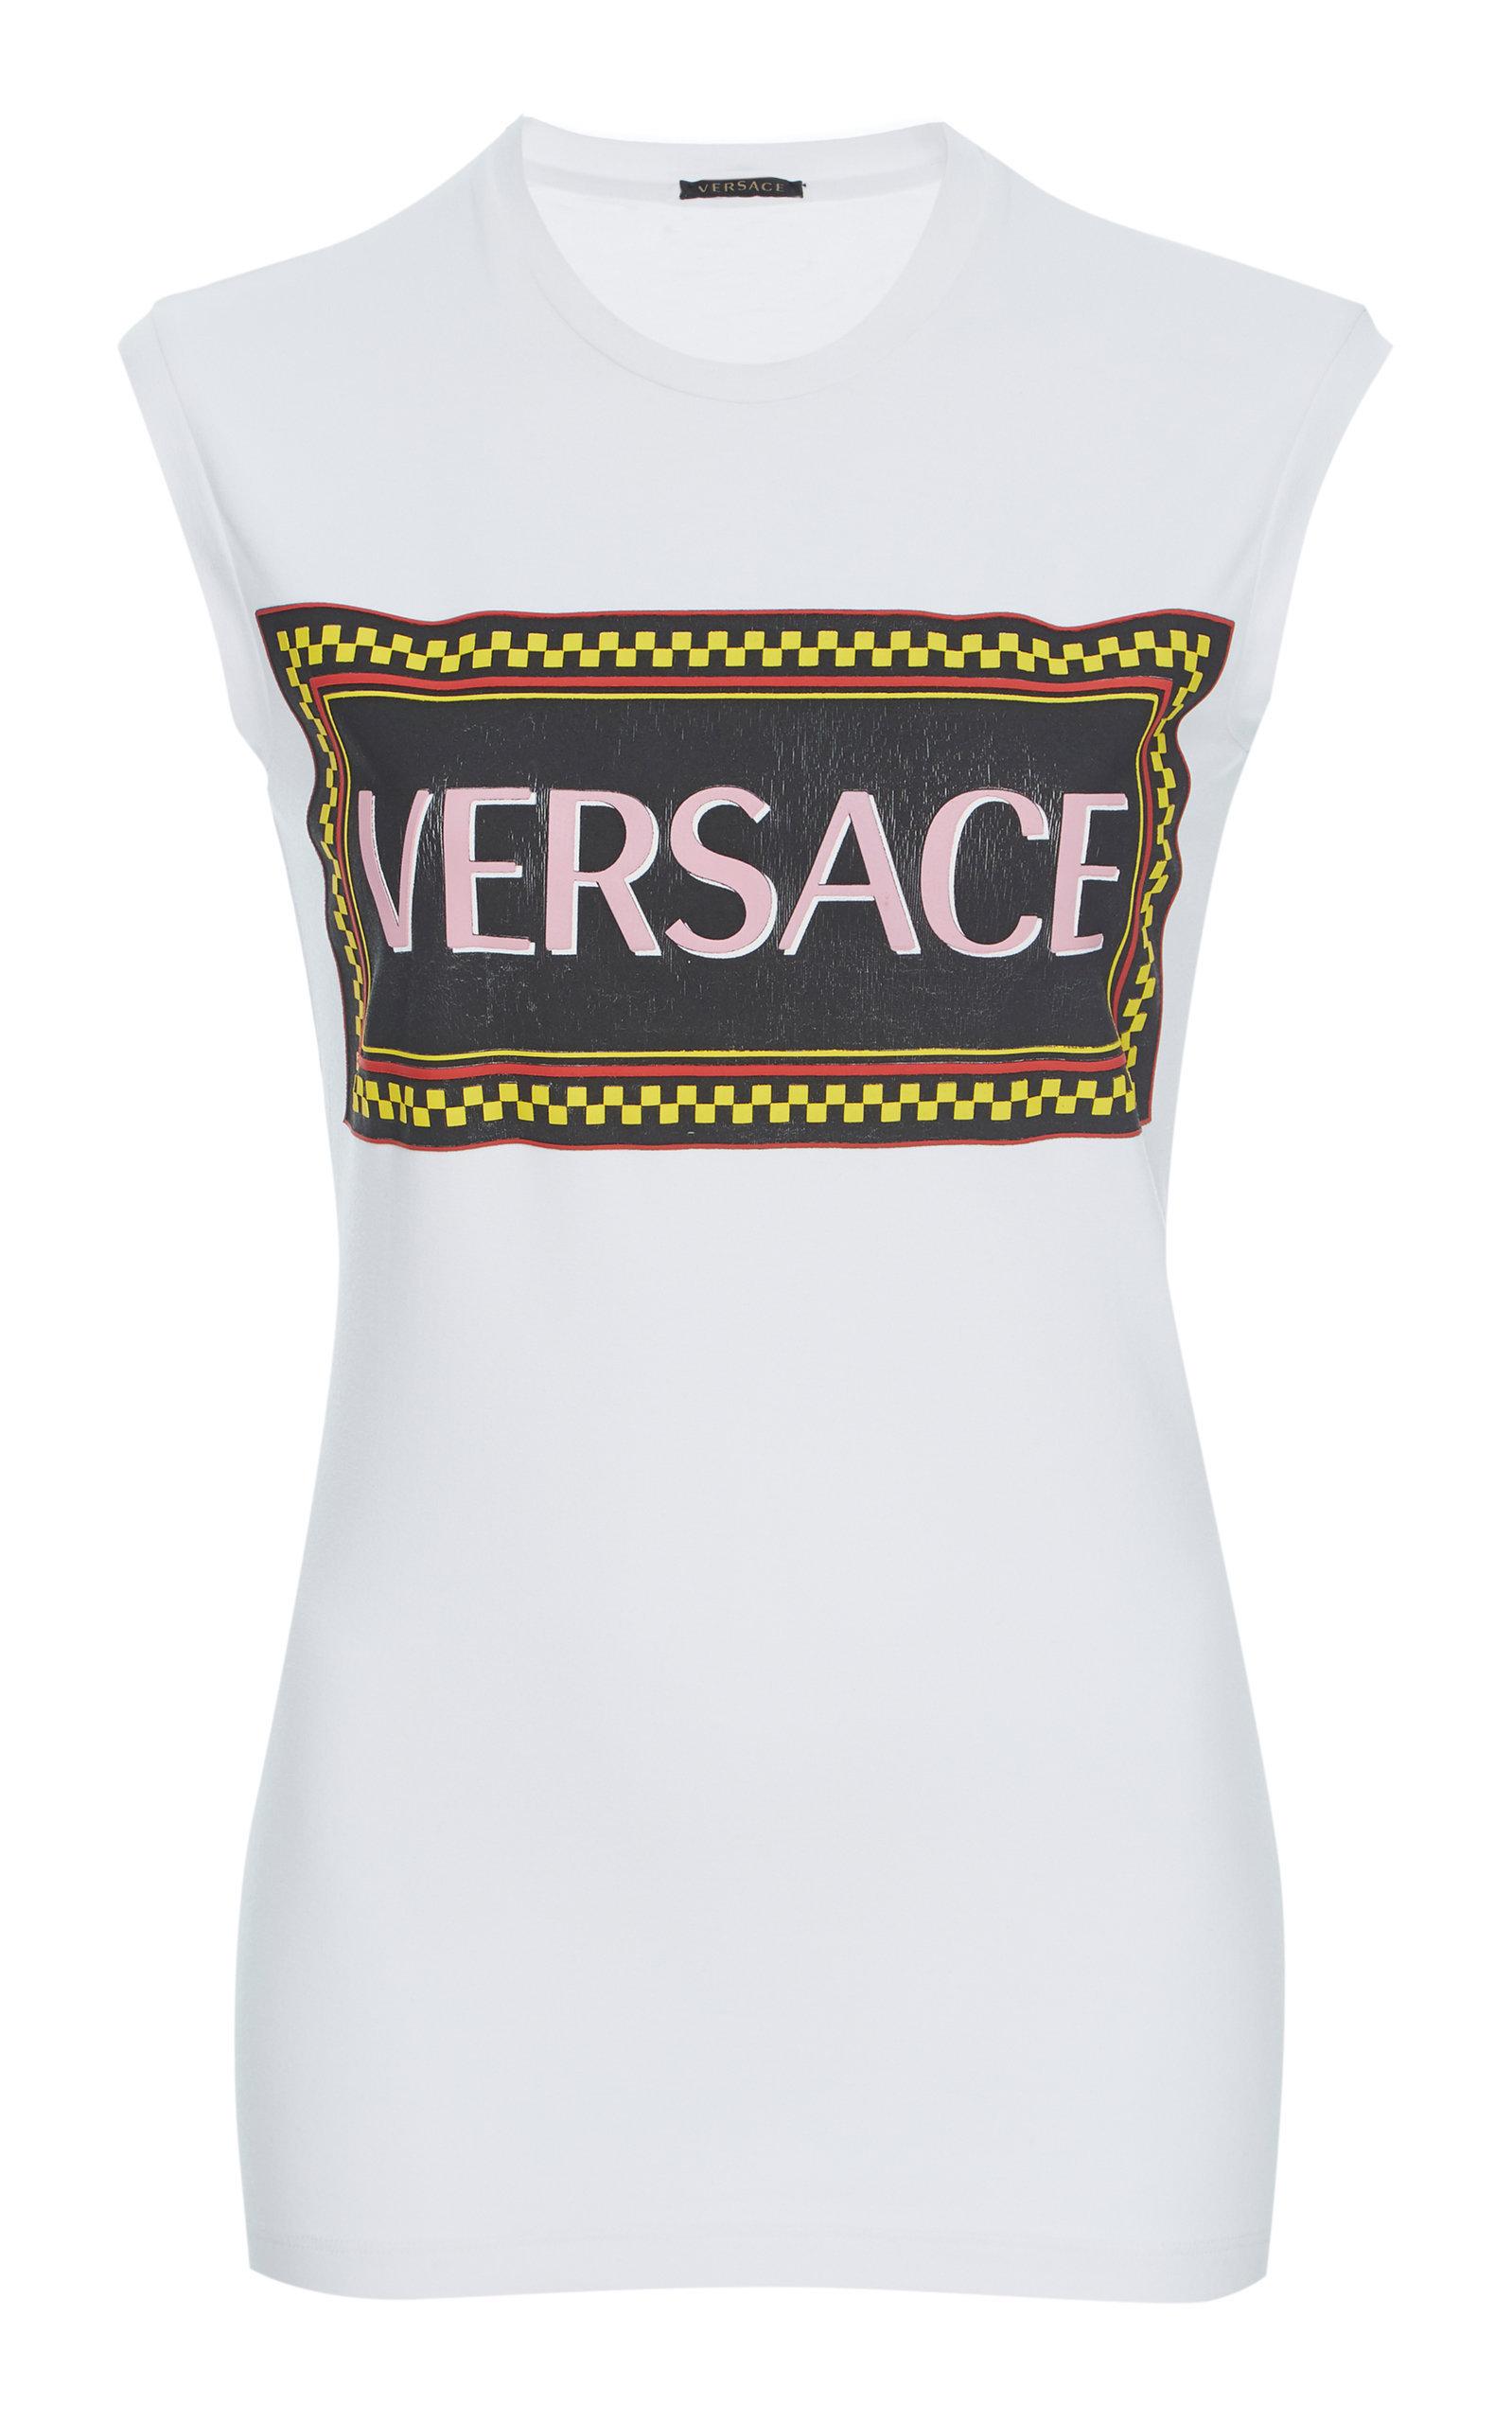 versace muscle shirt